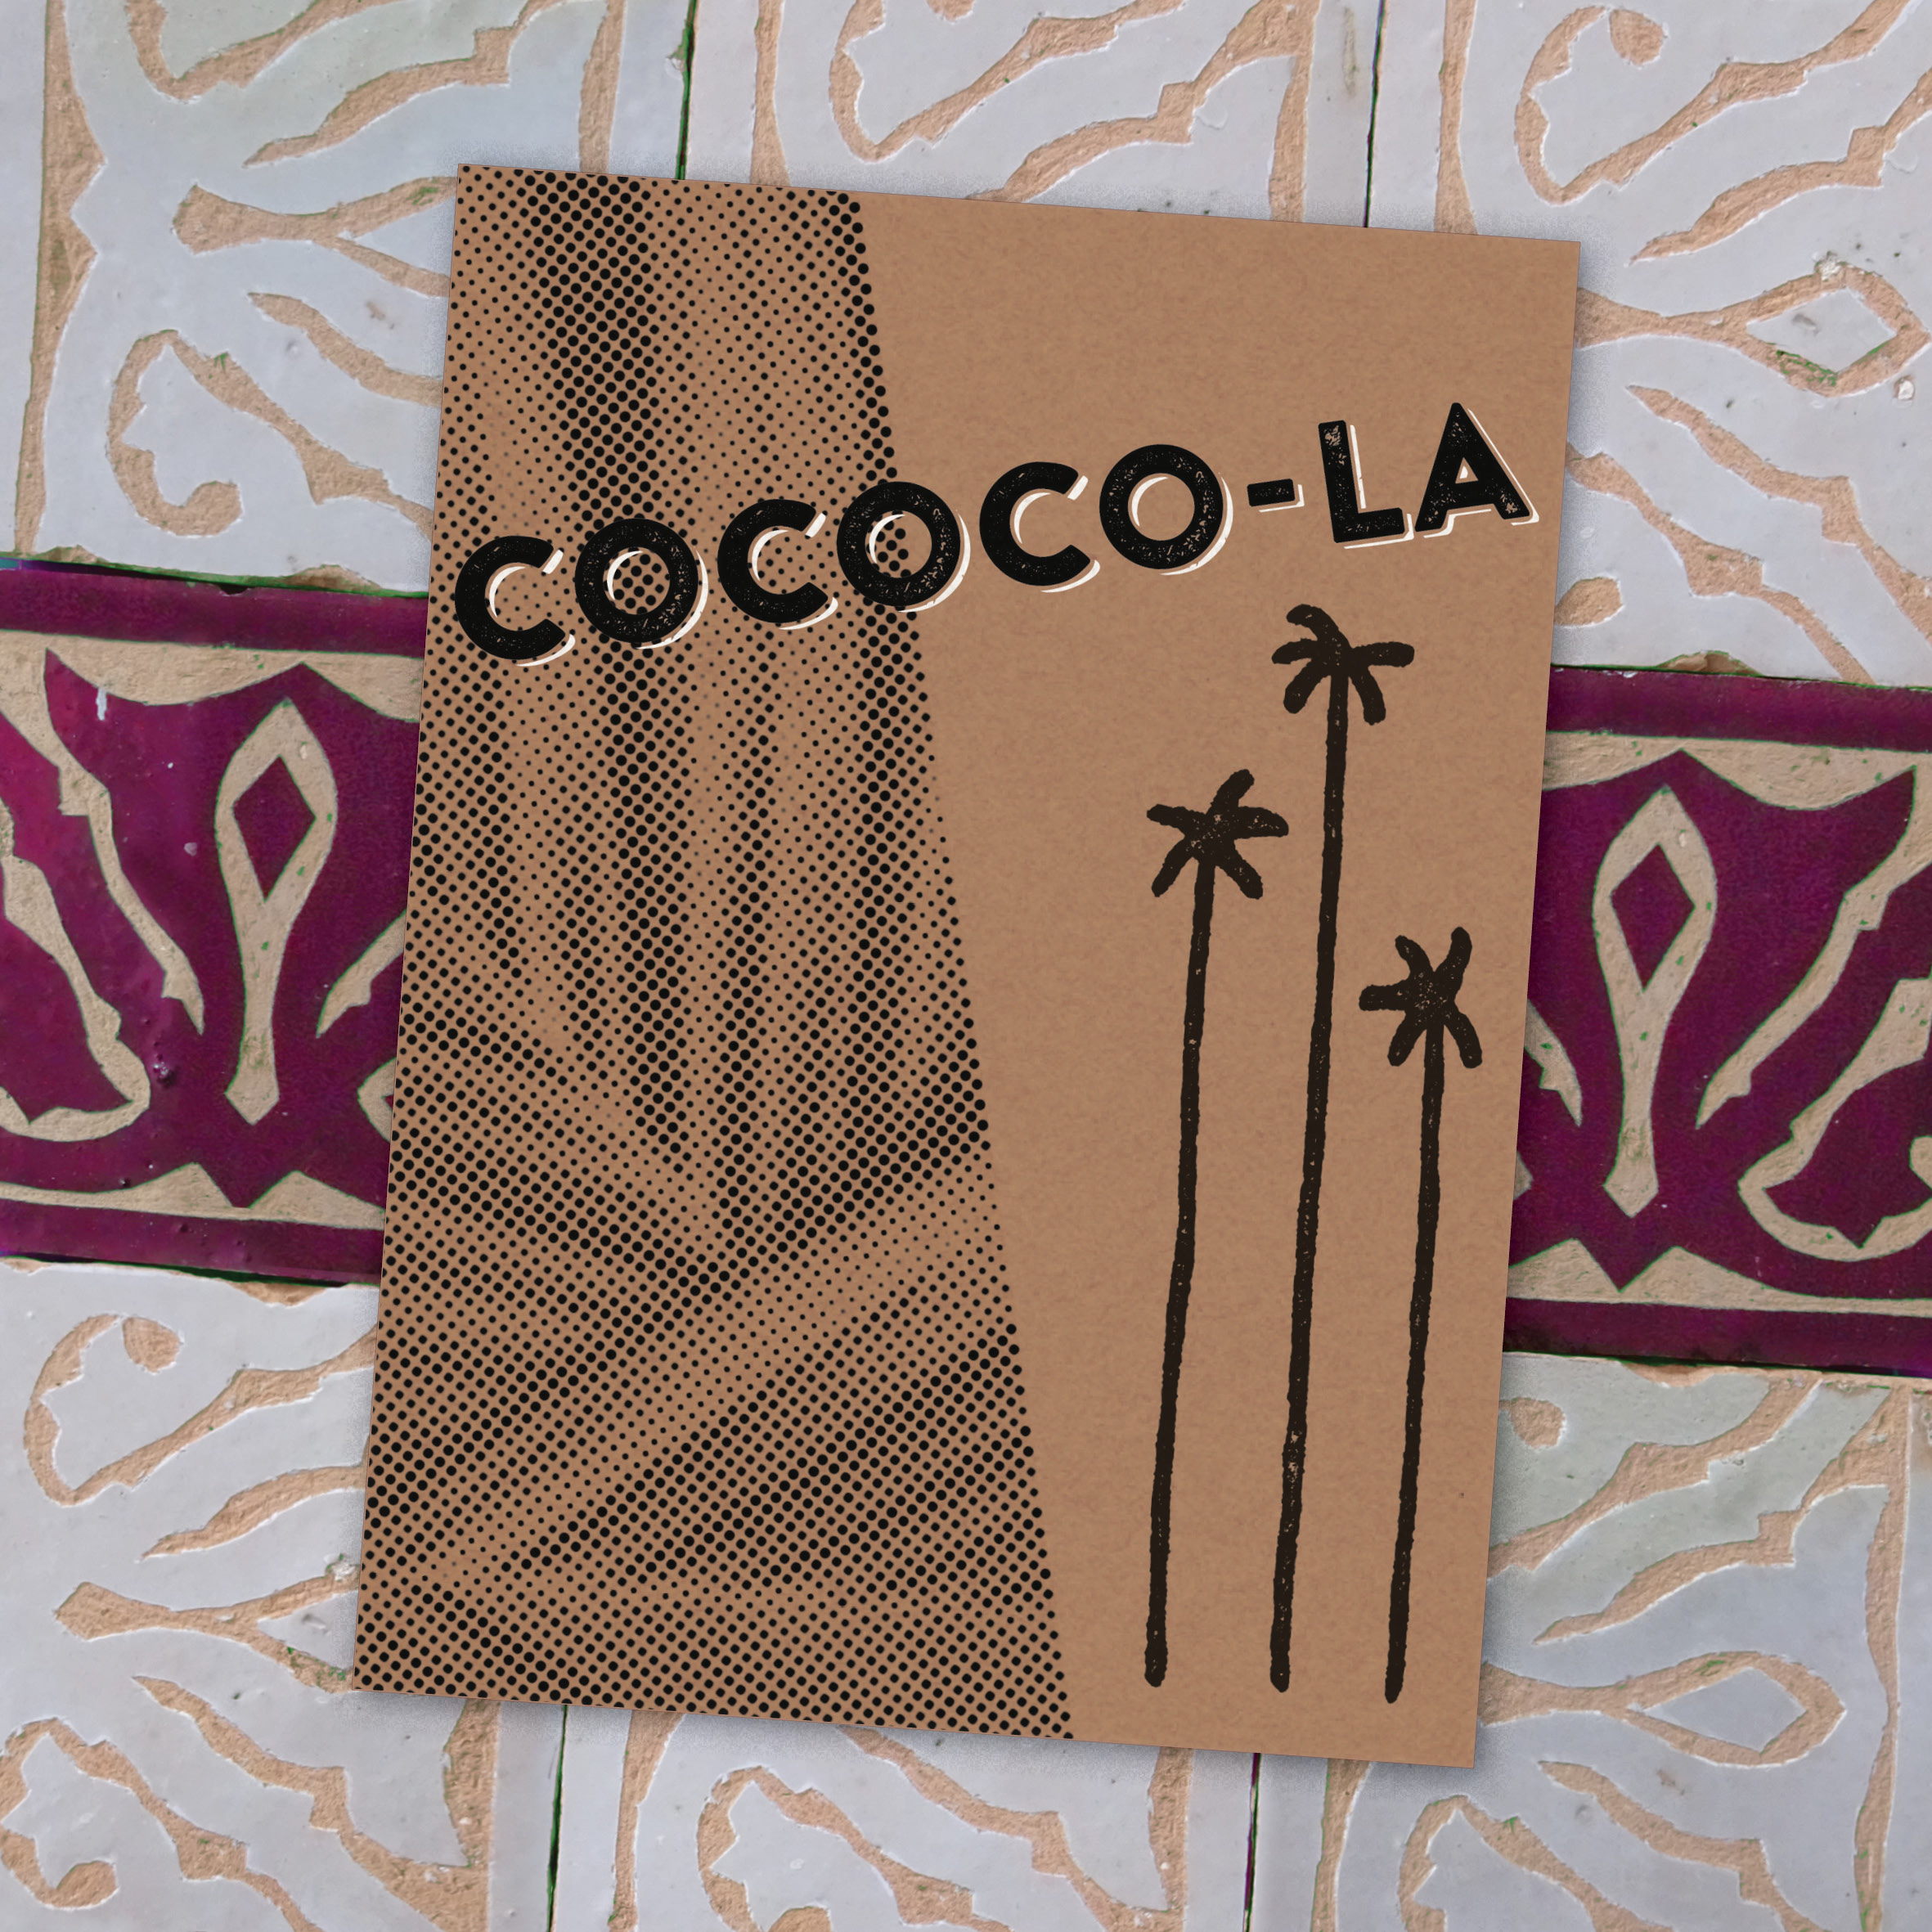 Cococo-la_Thumbnail_Angle2